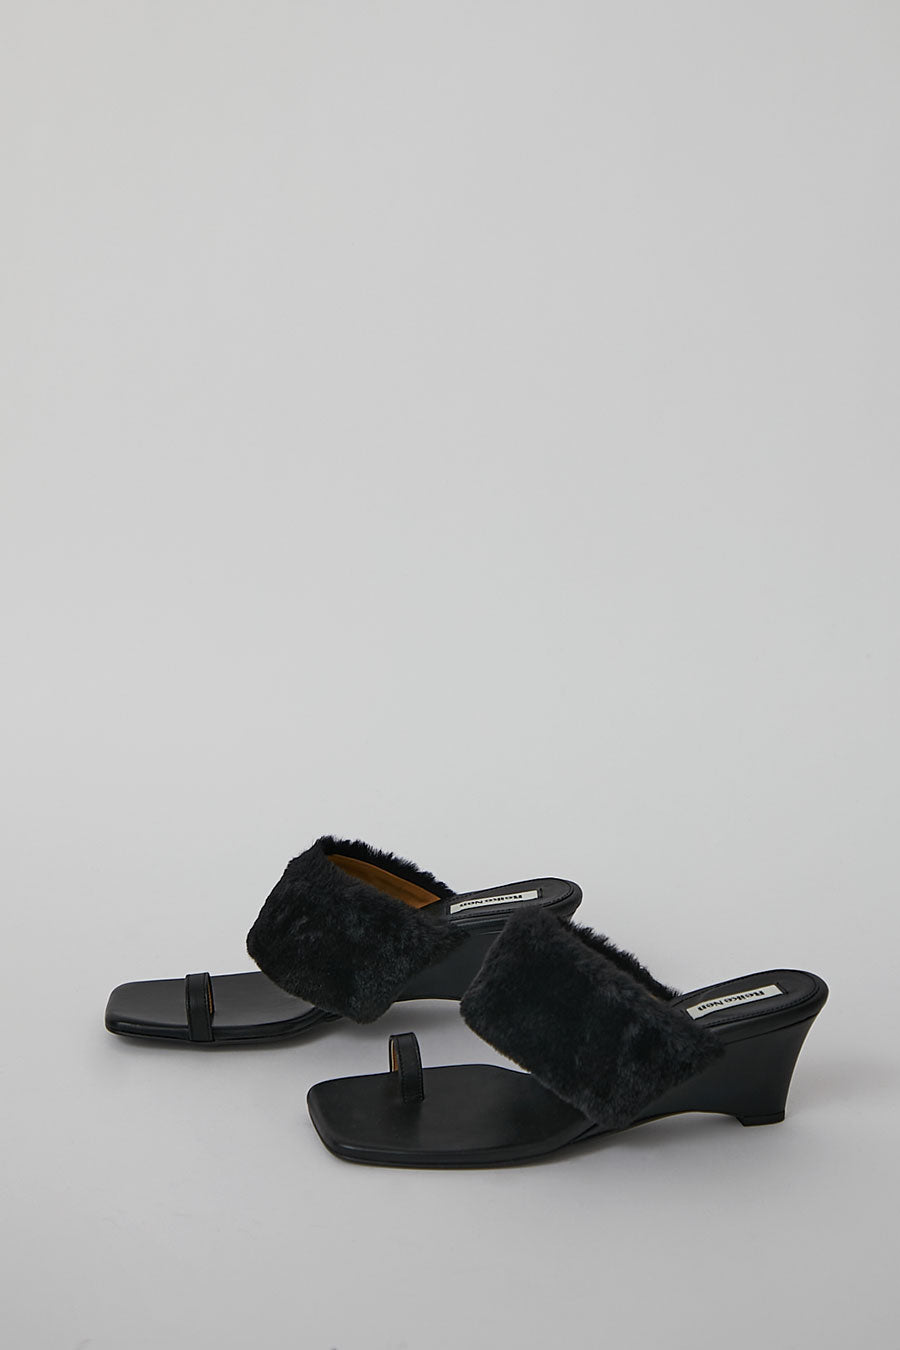 Reike Nen Faux Fur Wedge Sandals in Black